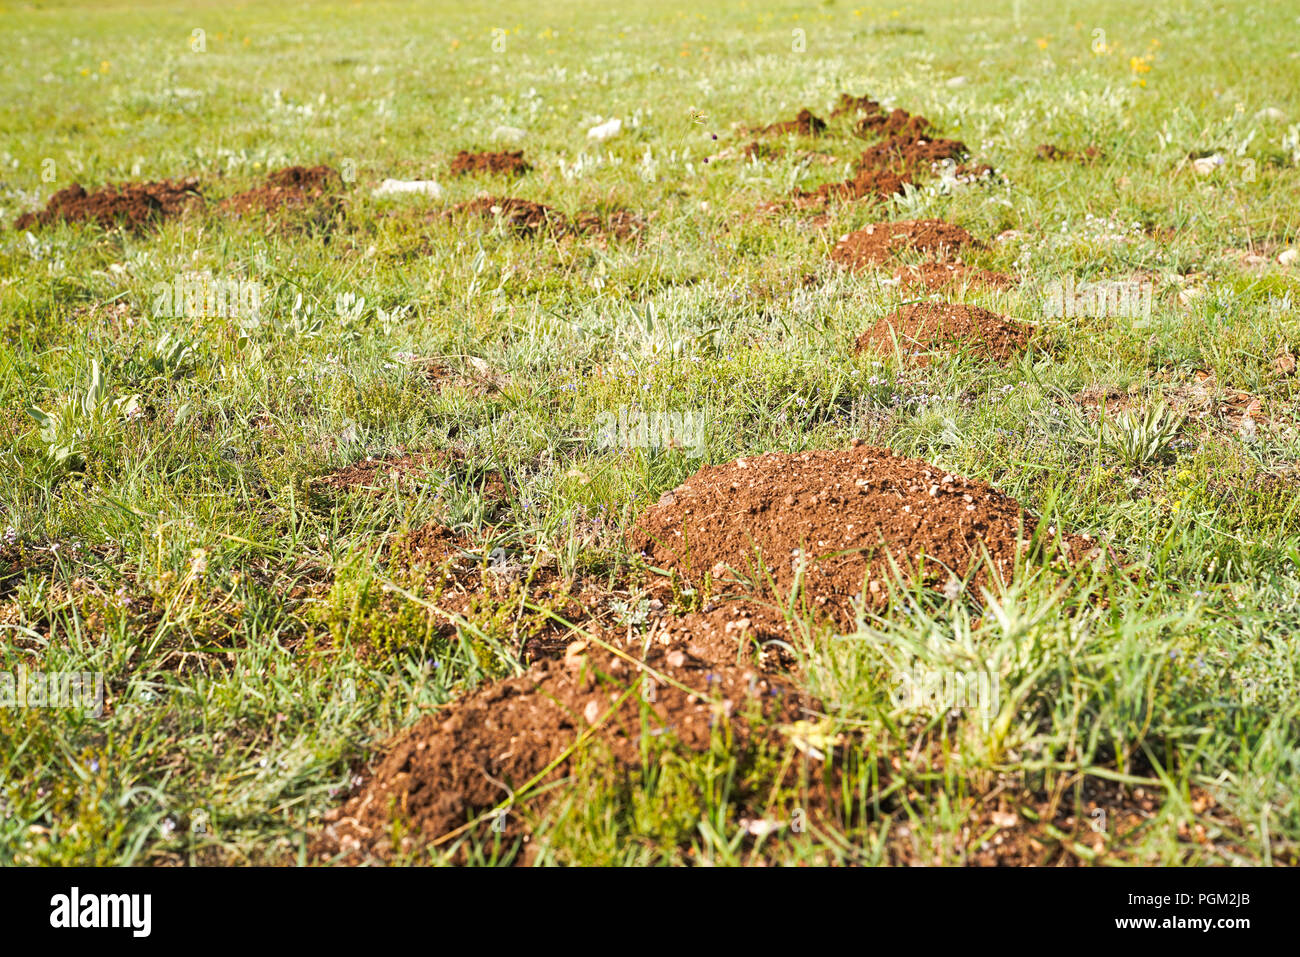 Selektiver Fokus der neuen Maulwurfshügel auf Rasen durch Maulwürfe Bevölkerung Stockfoto